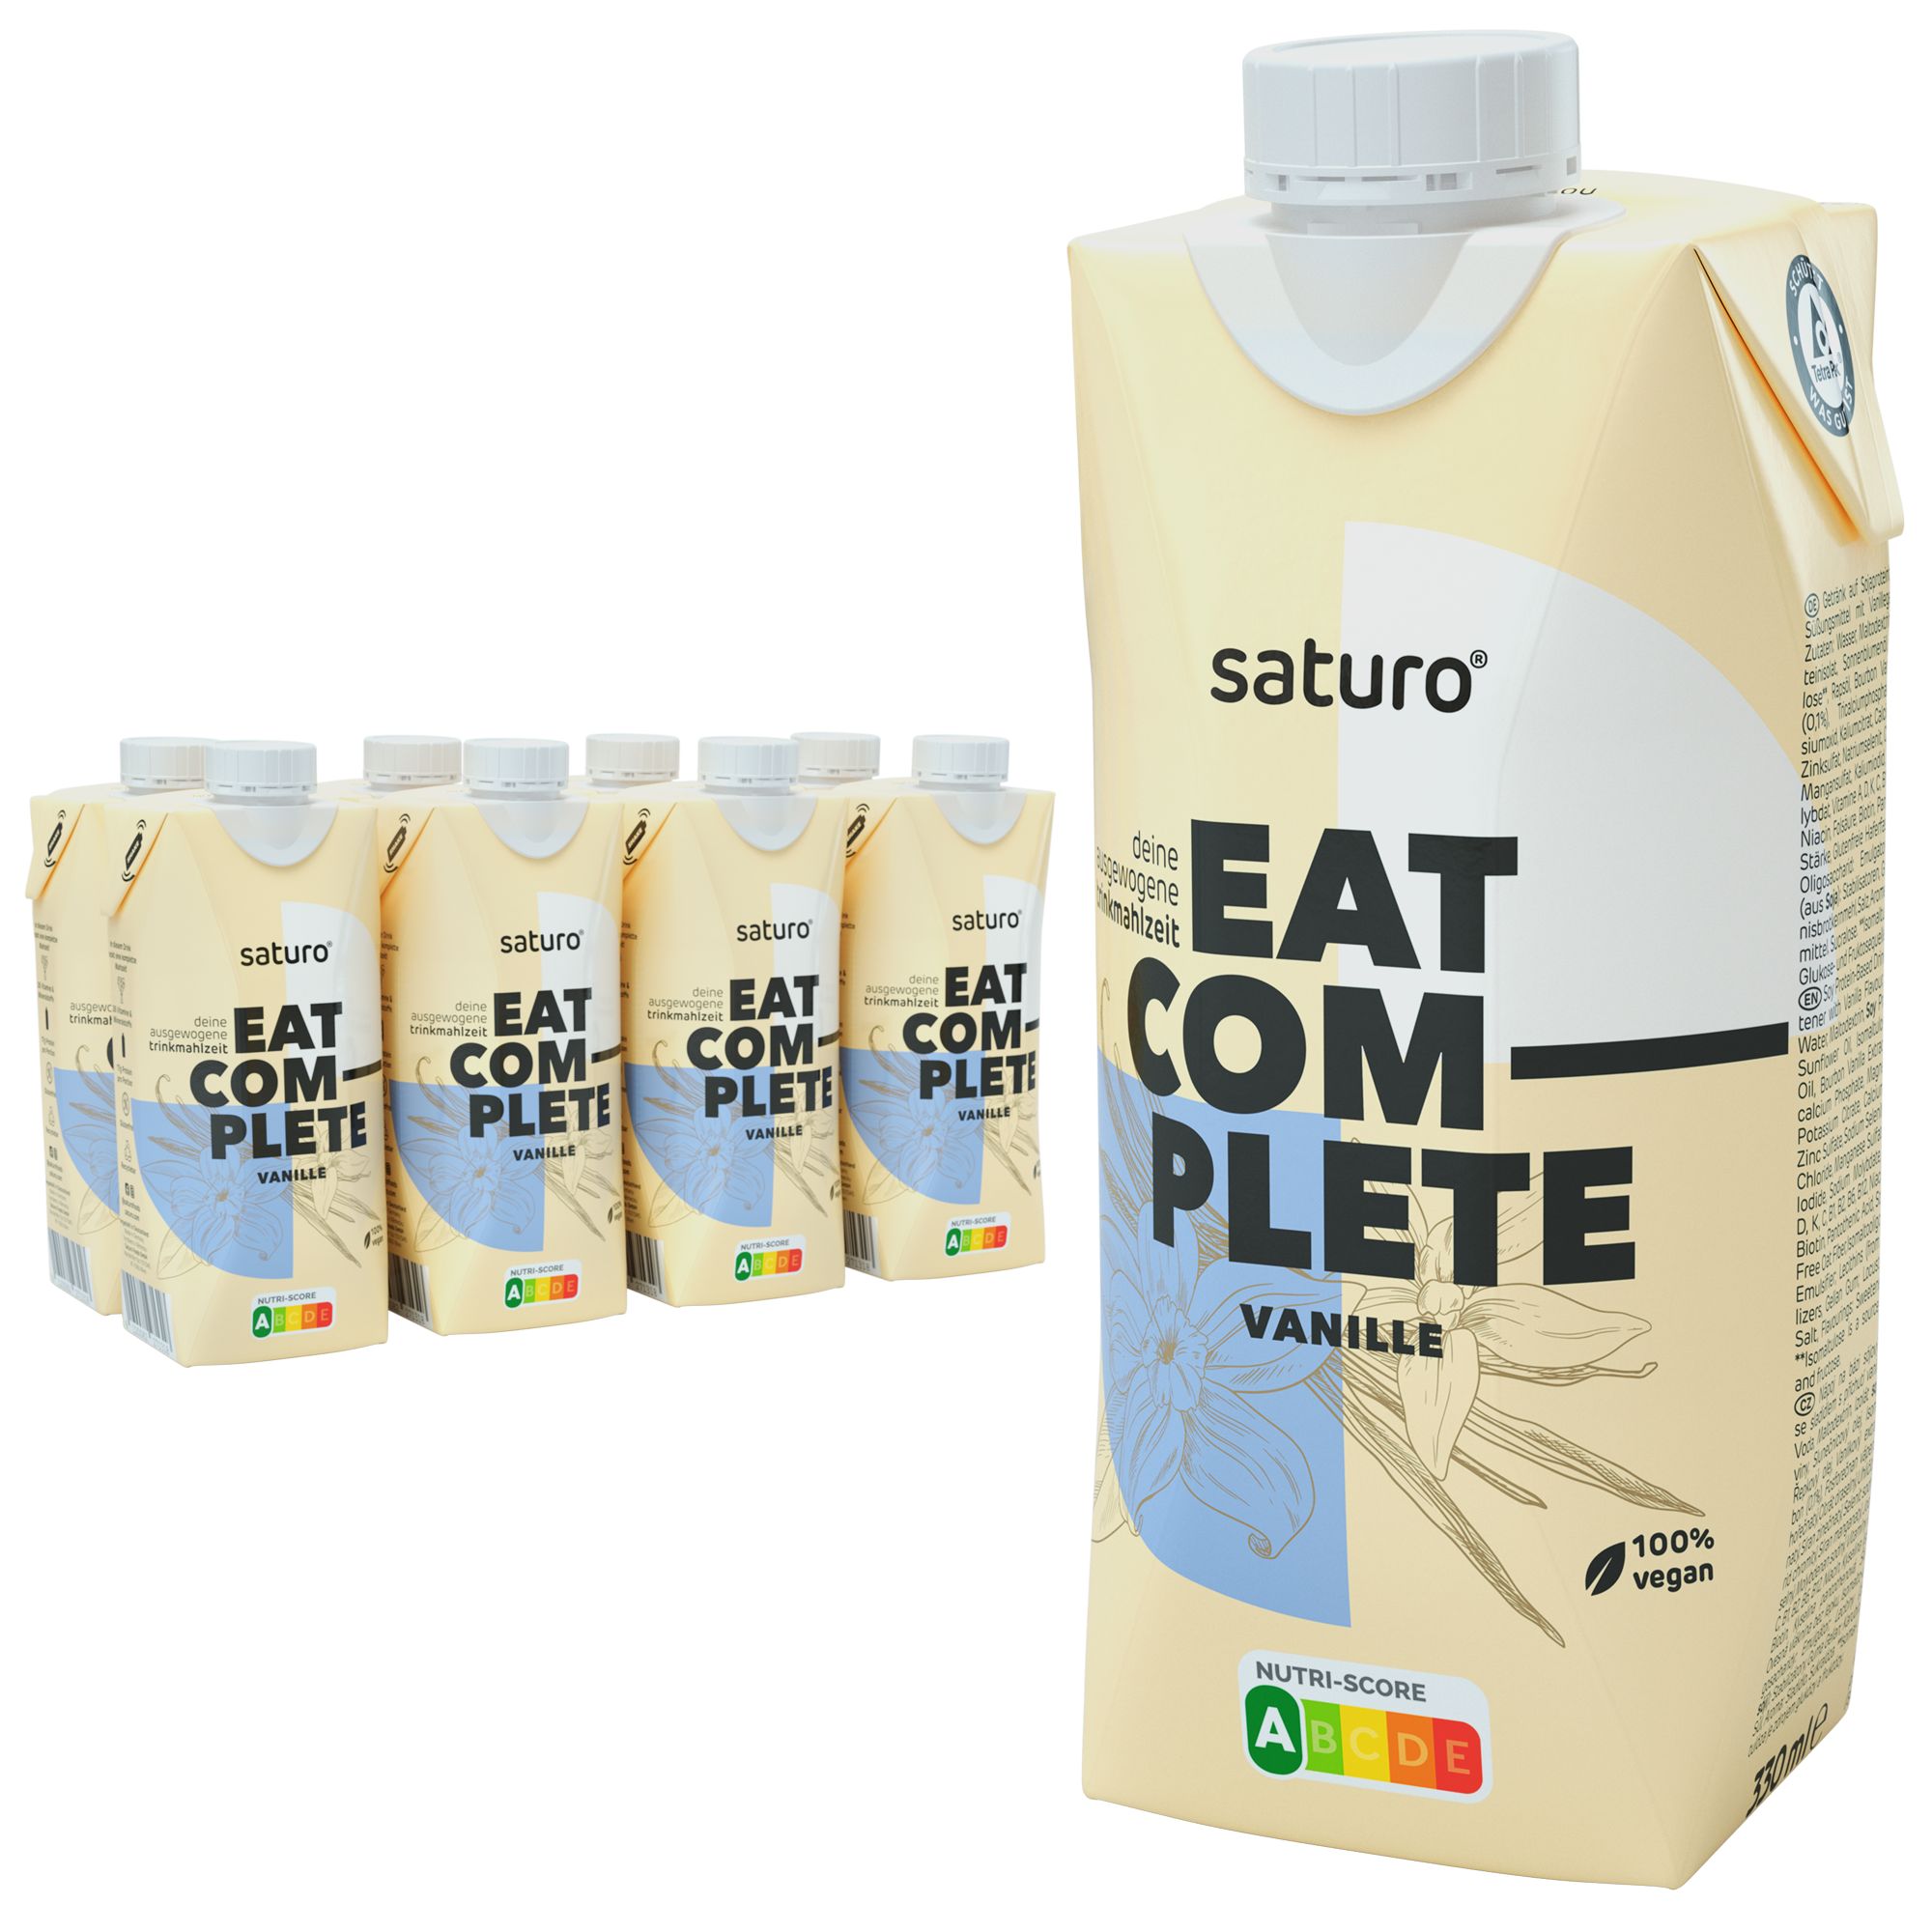 Saturo Trinknahrung Vegan Vanille | Astronautennahrung Mit Protein | Trinkmahlzeit Mit Nährstoffen